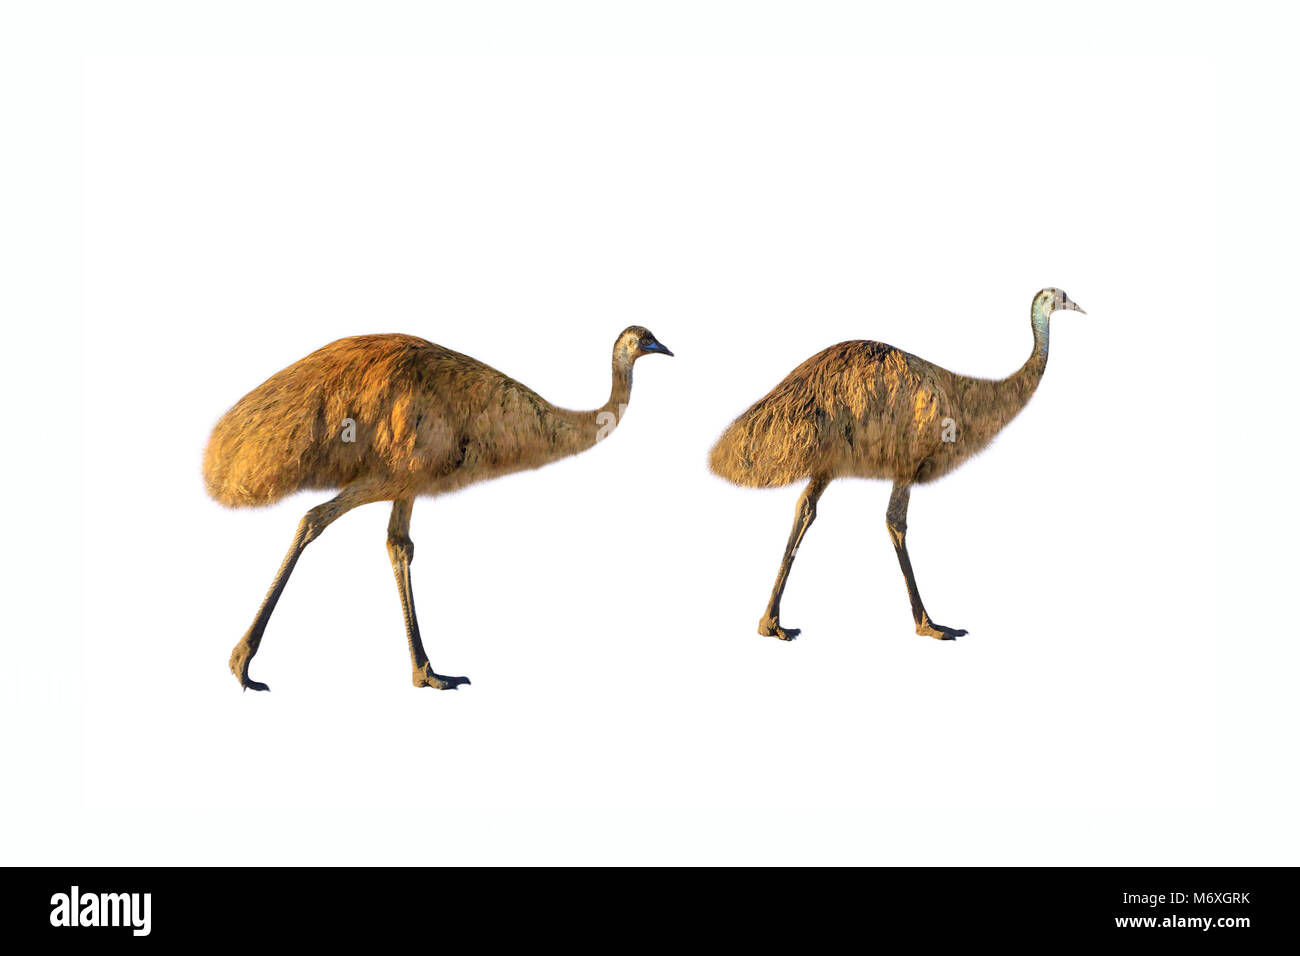 Zwei Emus, Dromaius novaehollandiae, wandern, auf weißem Hintergrund. Die wwu ist die symbolische Nationalvogel von Australien. Sie lebt in Prärien und Savannah von ganzen australischen Territorium. Seitenansicht Stockfoto